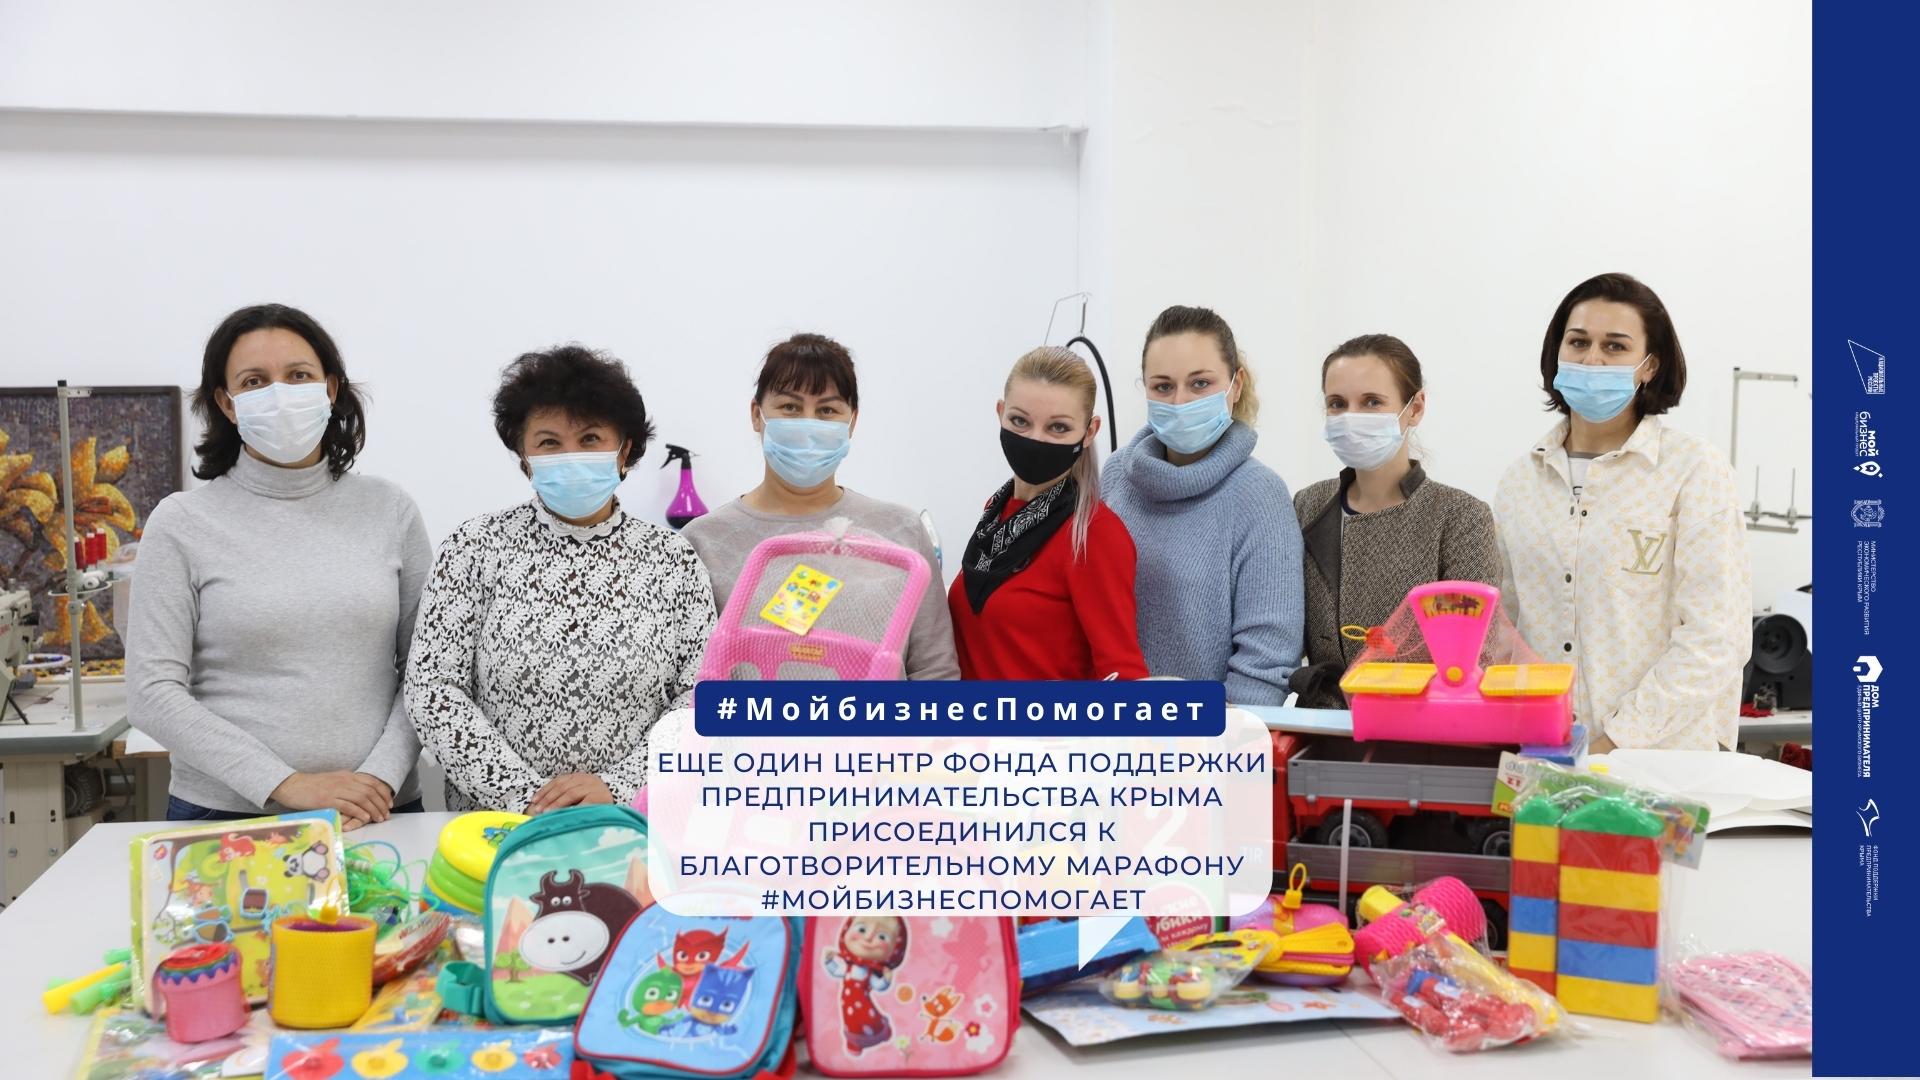 Еще один центр Фонда поддержки предпринимательства Крыма присоединился к благотворительному марафону #МойбизнесПомогает